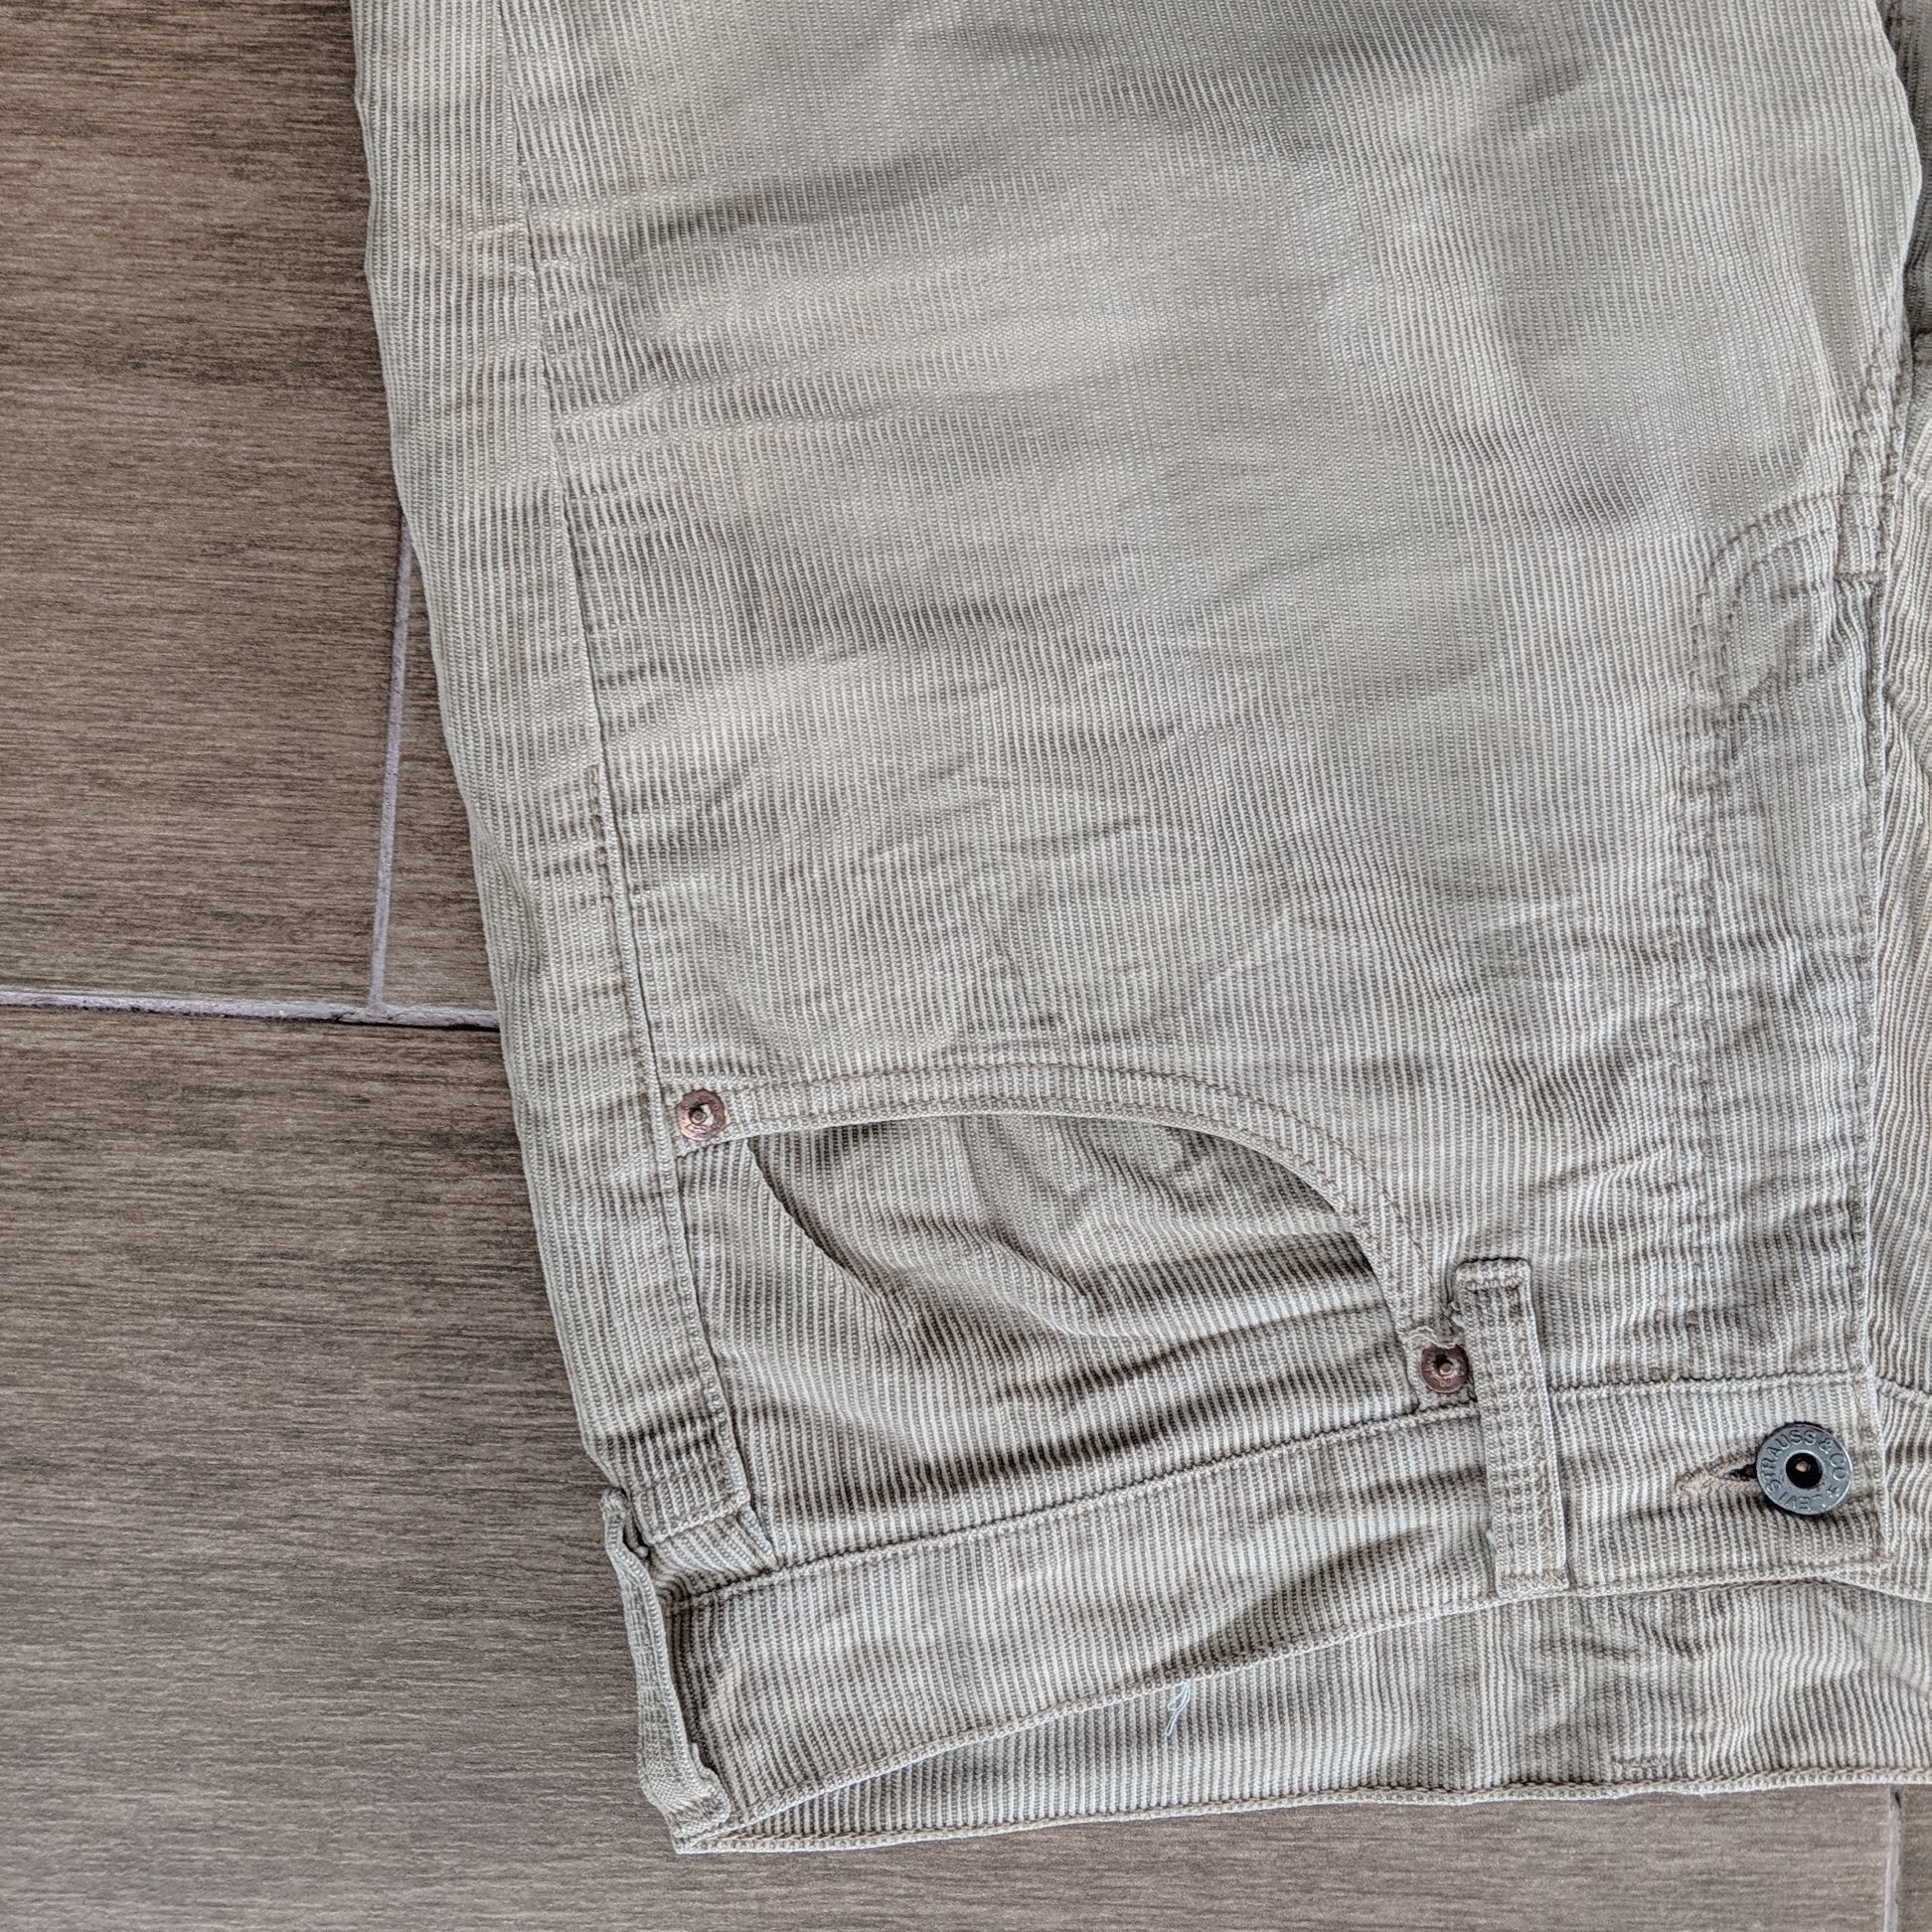 Vintage Levi's 502 Casual Trousers Pants - 4